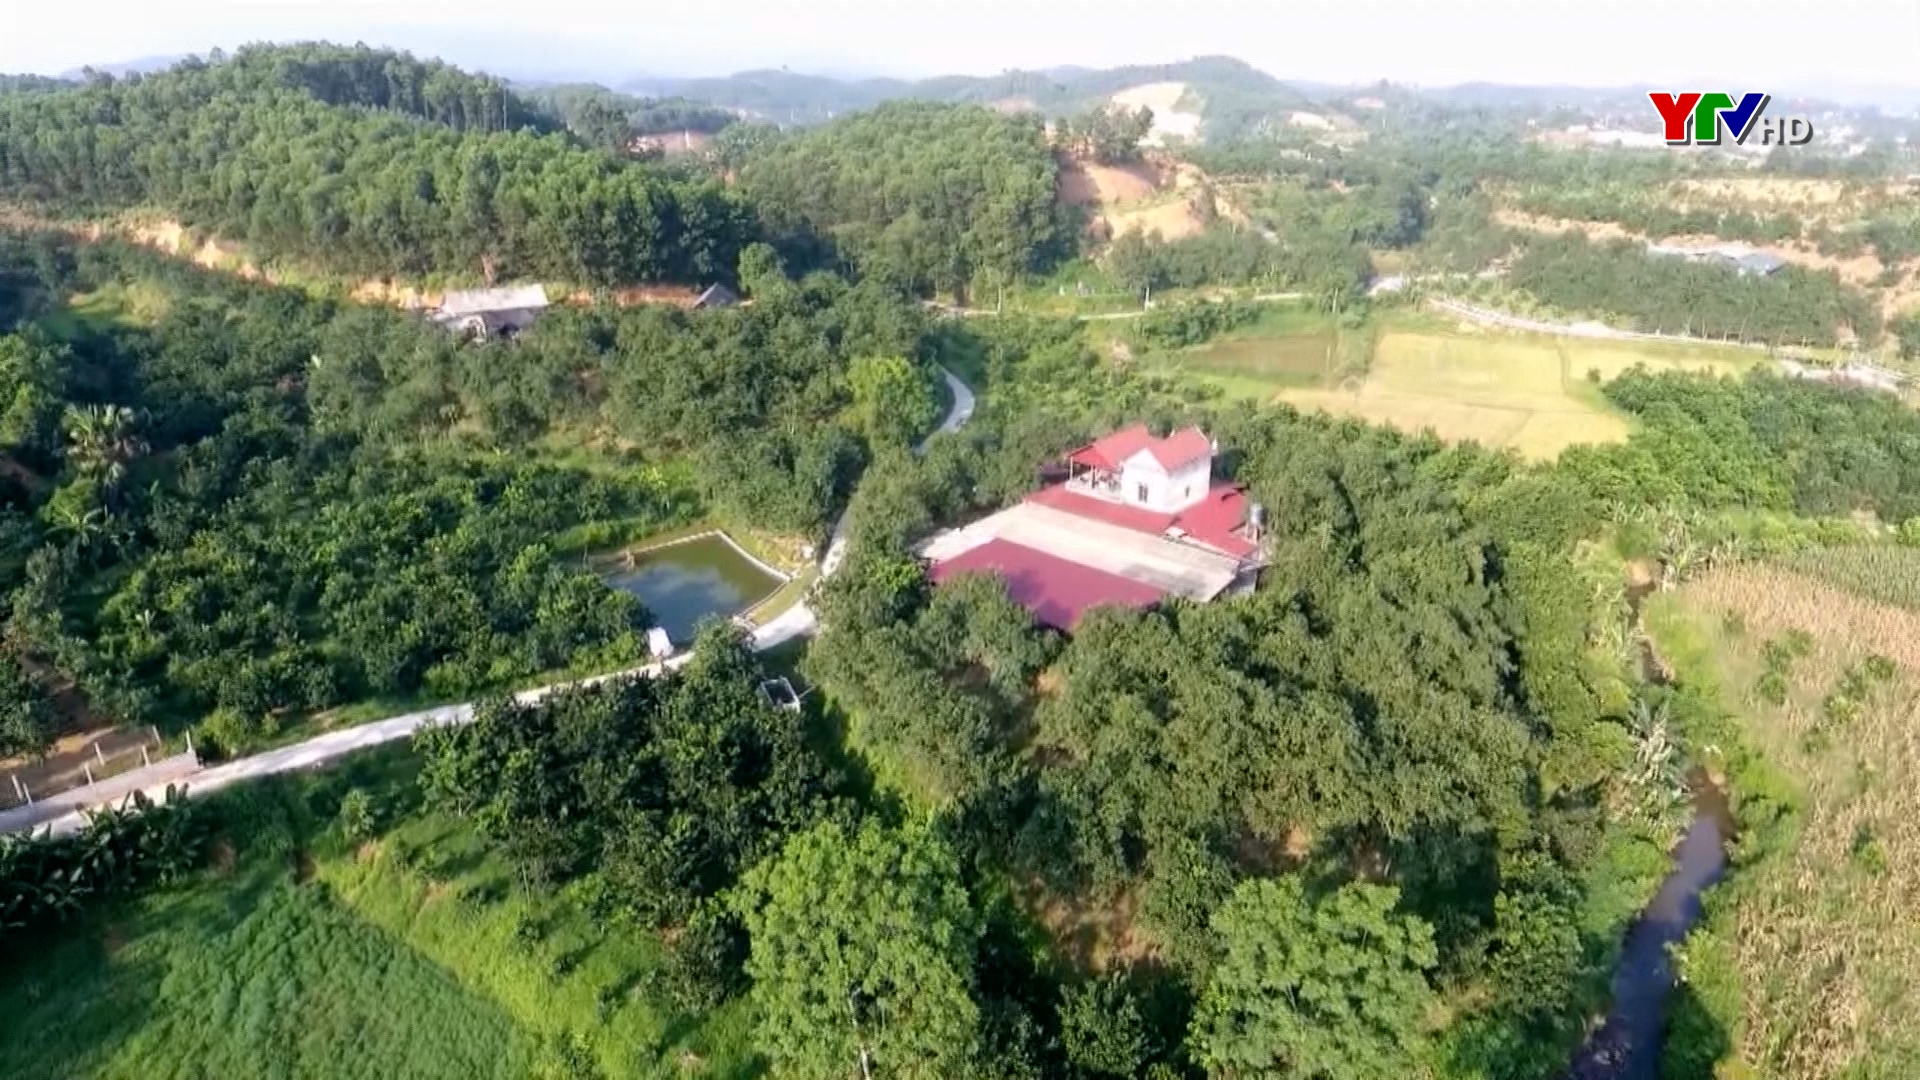 Hiệu quả chính sách đặc thù hỗ trợ sản xuất nông nghiệp ở huyện Yên Bình